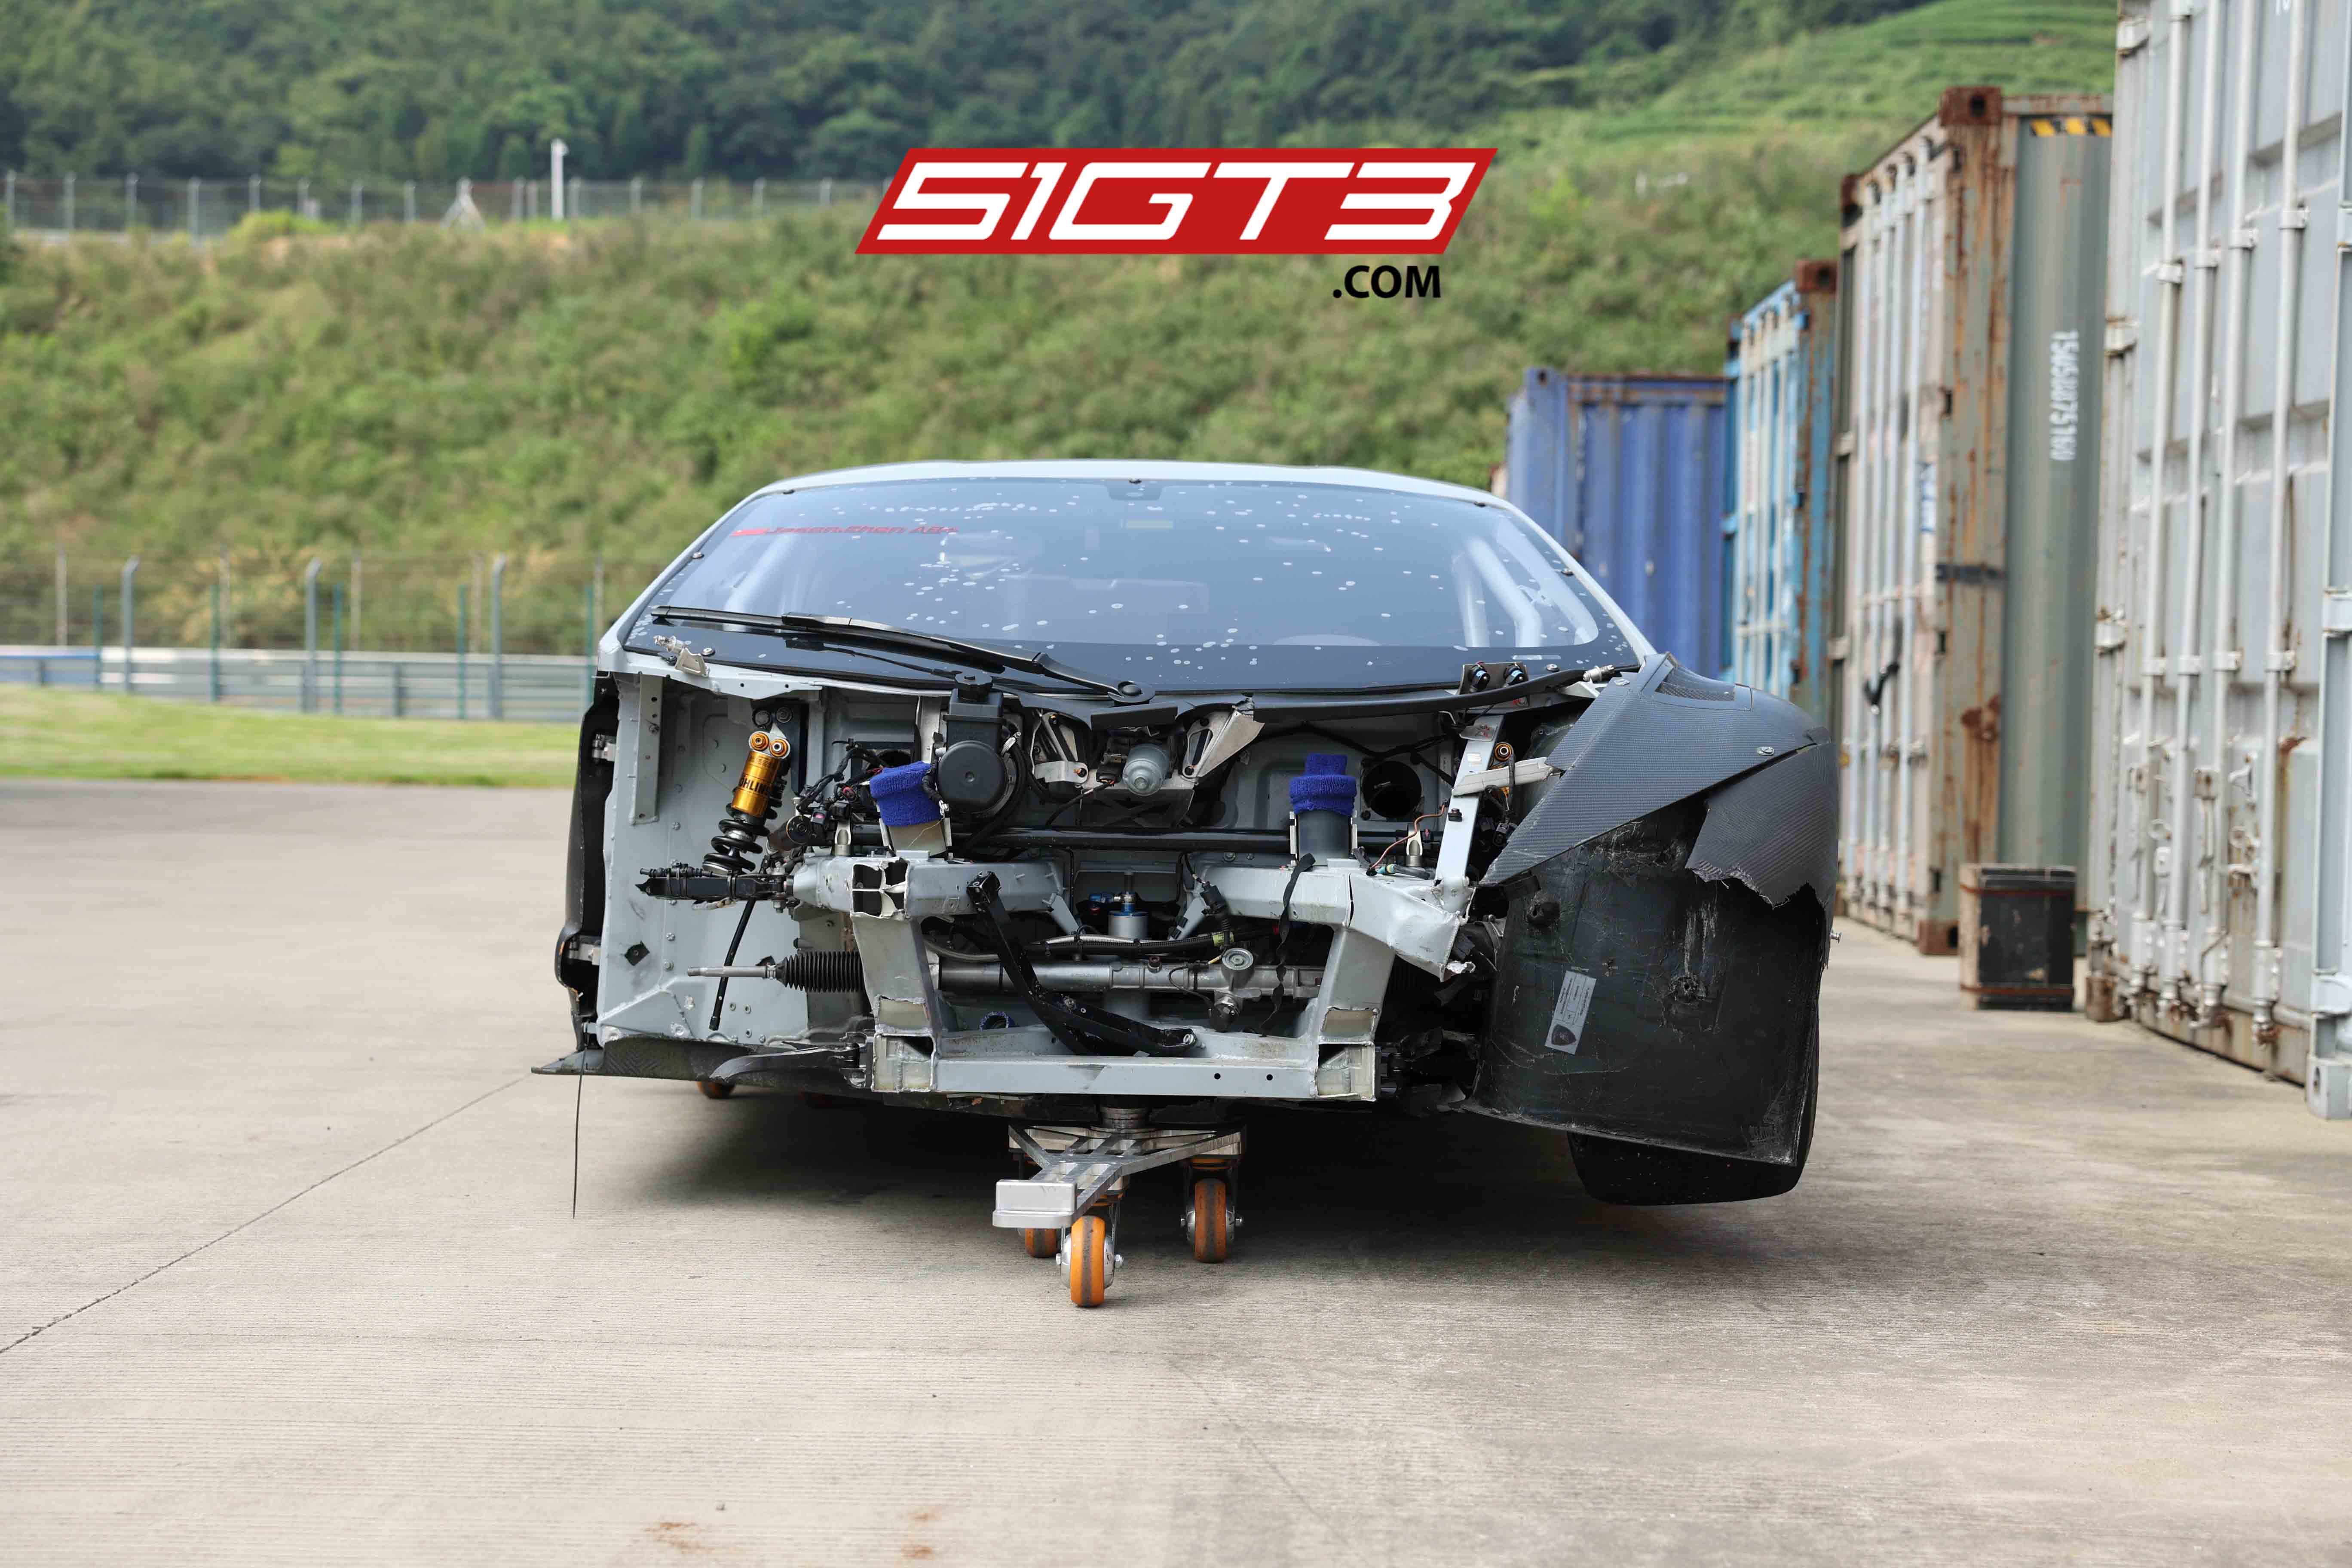 2018 람보르기니 우라칸 GT3 EVO(난파) - 무료 글로벌 배송